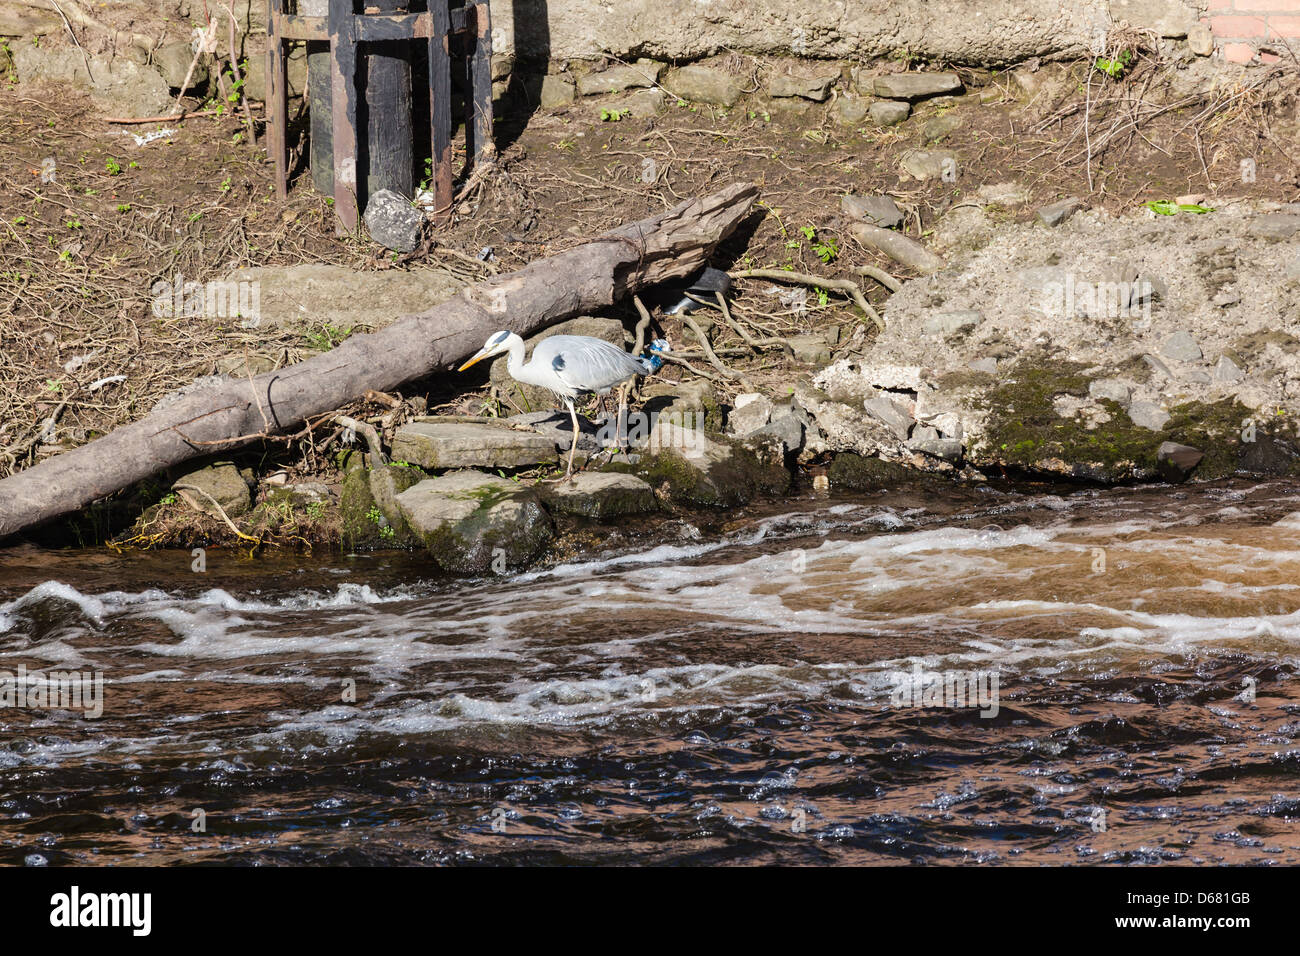 Un héron la pêche sur la rivière d'usure au niveau de la recherche, Durham weir la turbulence, vu de Framwelgate Waterside, County Durham, Royaume-Uni Banque D'Images